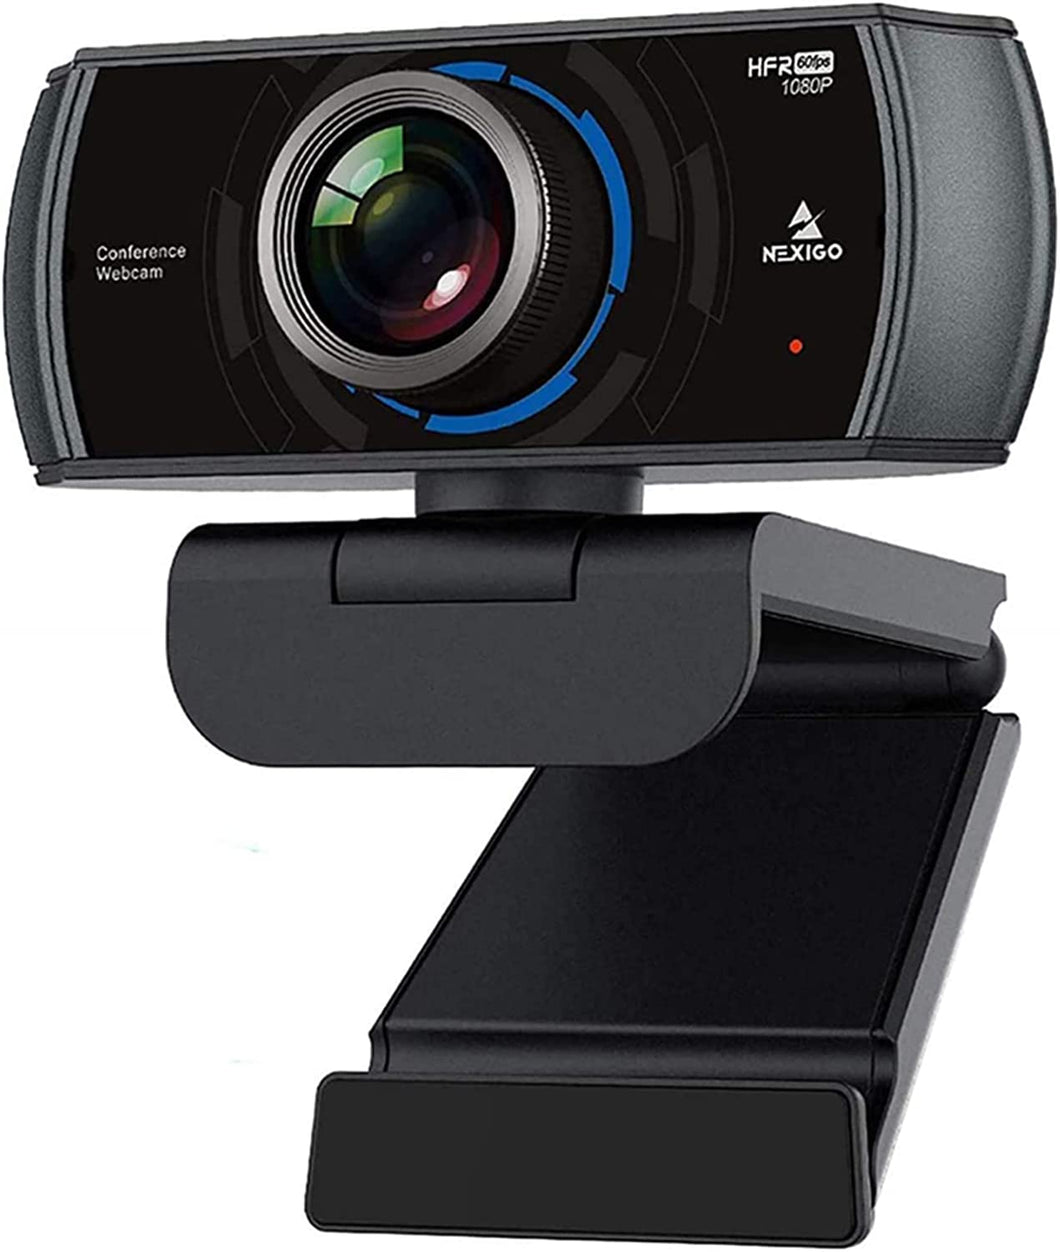 NexiGo N980P 1080P 60FPS Webcam with Microphone and Software Control, USB...